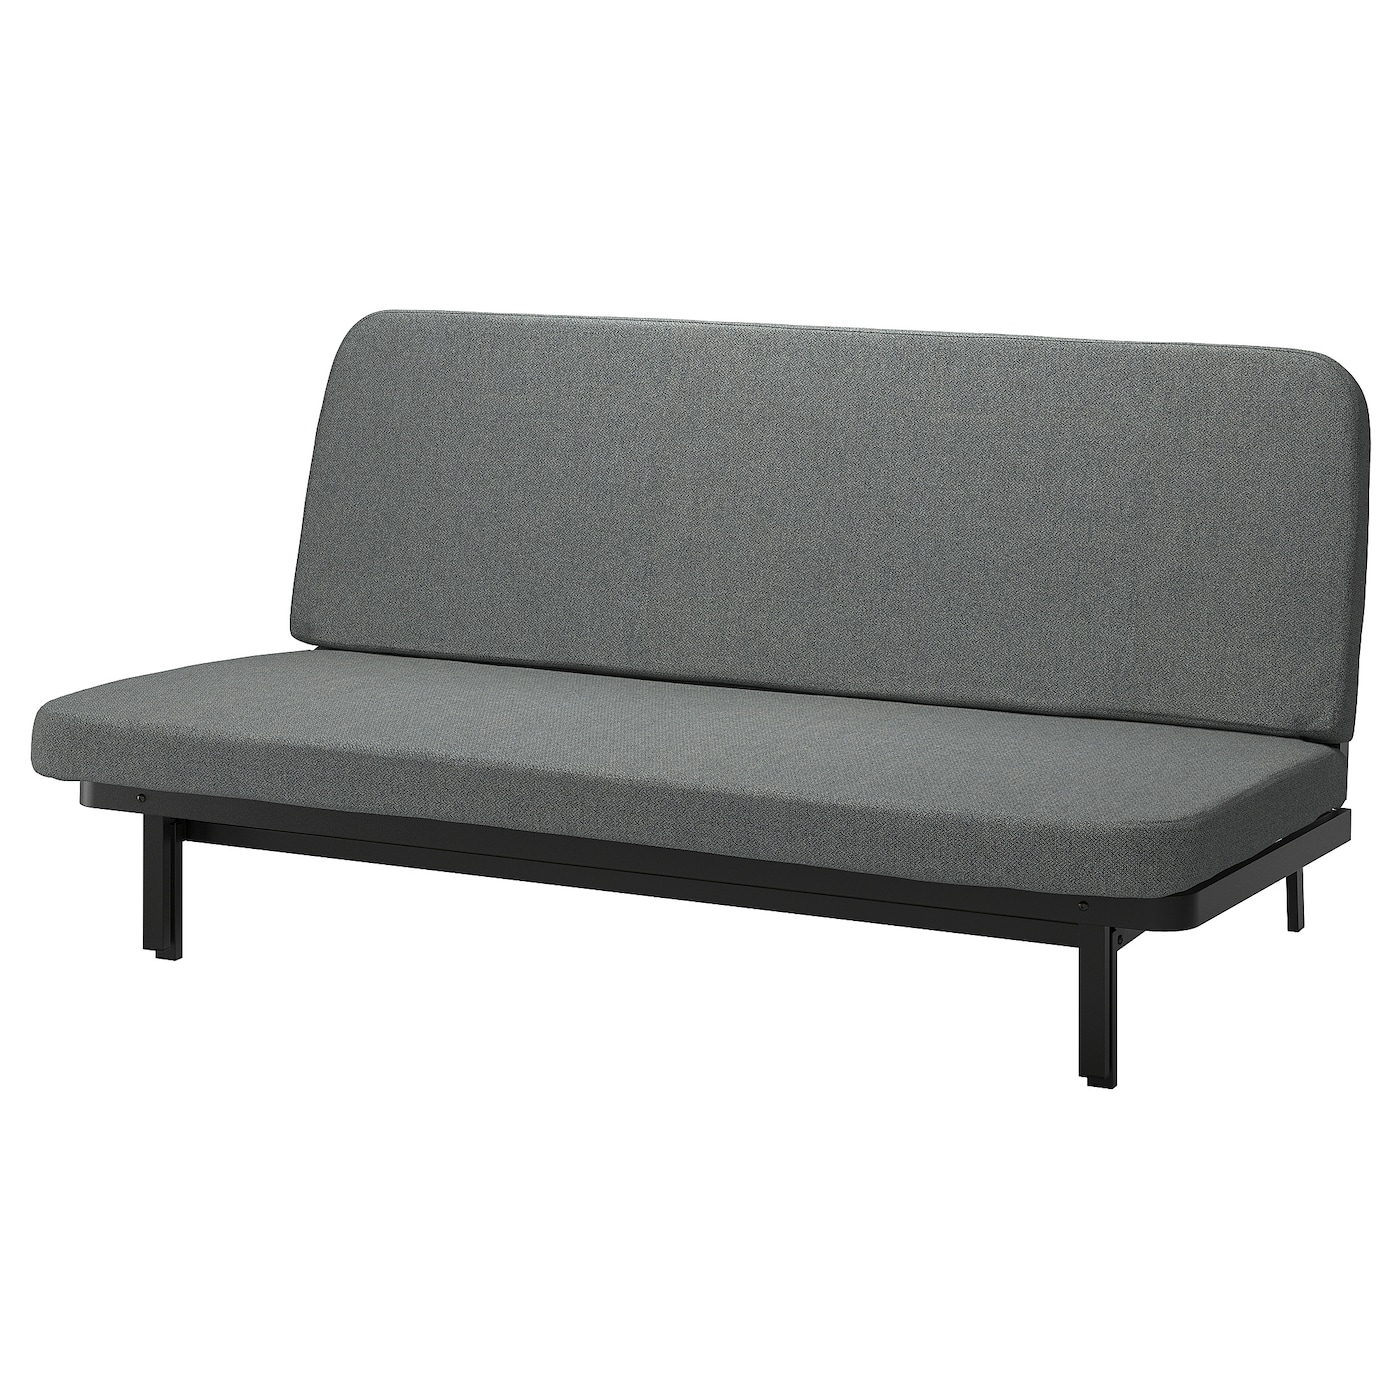 NYHAMN 3-местный диван-кровать, поролоновый матрас в комплекте/Скартофт черный/светло-серый IKEA съемный и моющийся ленивый диван татами складной одинарный диван кровать спинка стул для балкона эркера складная подушка диван стул